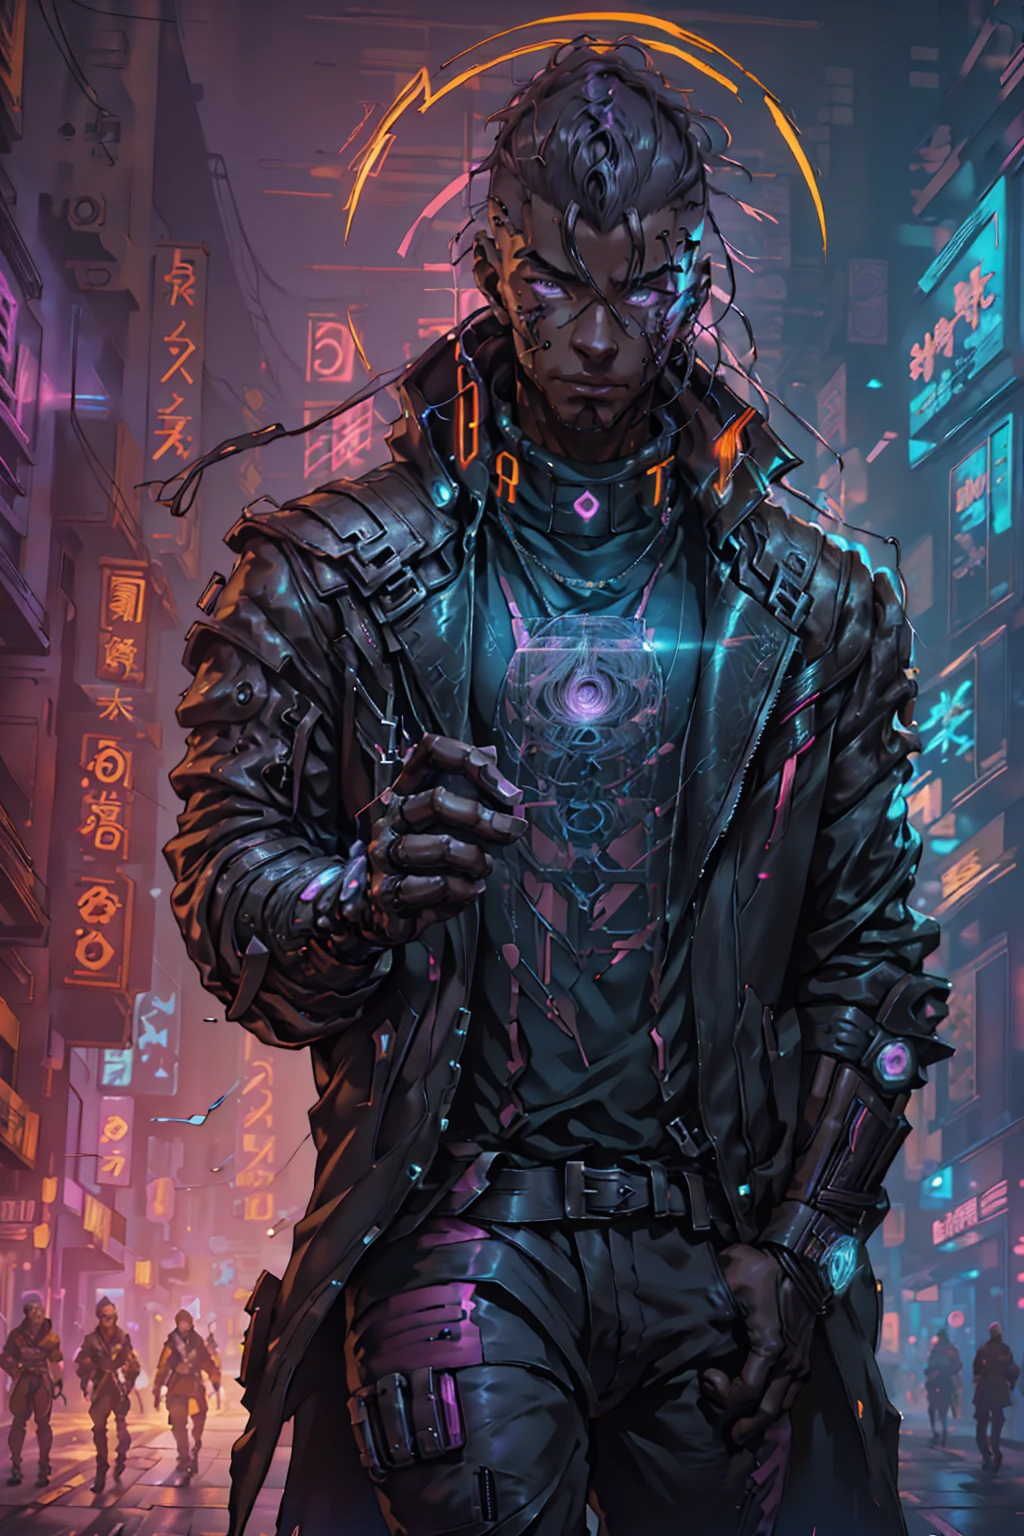 (beste Qualität, Meisterwerk, voller Details), 1 Mädchen, offizielle Anime-Kunstillustration, Afroamerikanischer Mann mit violetten Augen, Dunkelhäutiger Mann in kastanienbrauner Lederjacke läuft eine Straße entlang, hyper-realistic cyberpunk style, portrait of a cyberpunk man, cyberpunk art ultrarealistic 8k, cyberpunk style ， hyperrealistisch, Cyberpunk-Charakter, trendin auf Artstation, filmischer voller Charakter, Trends auf Artstation 4k, portrait of a cyberpunk cyborg, filmisch realistisches Portrait, Cyberpunk-Held perfekt fotorealistisch, unglaublich detailliert, 8k, UHD, Meisterwerk, beste Qualität, Extrem detailliert, kompliziert,